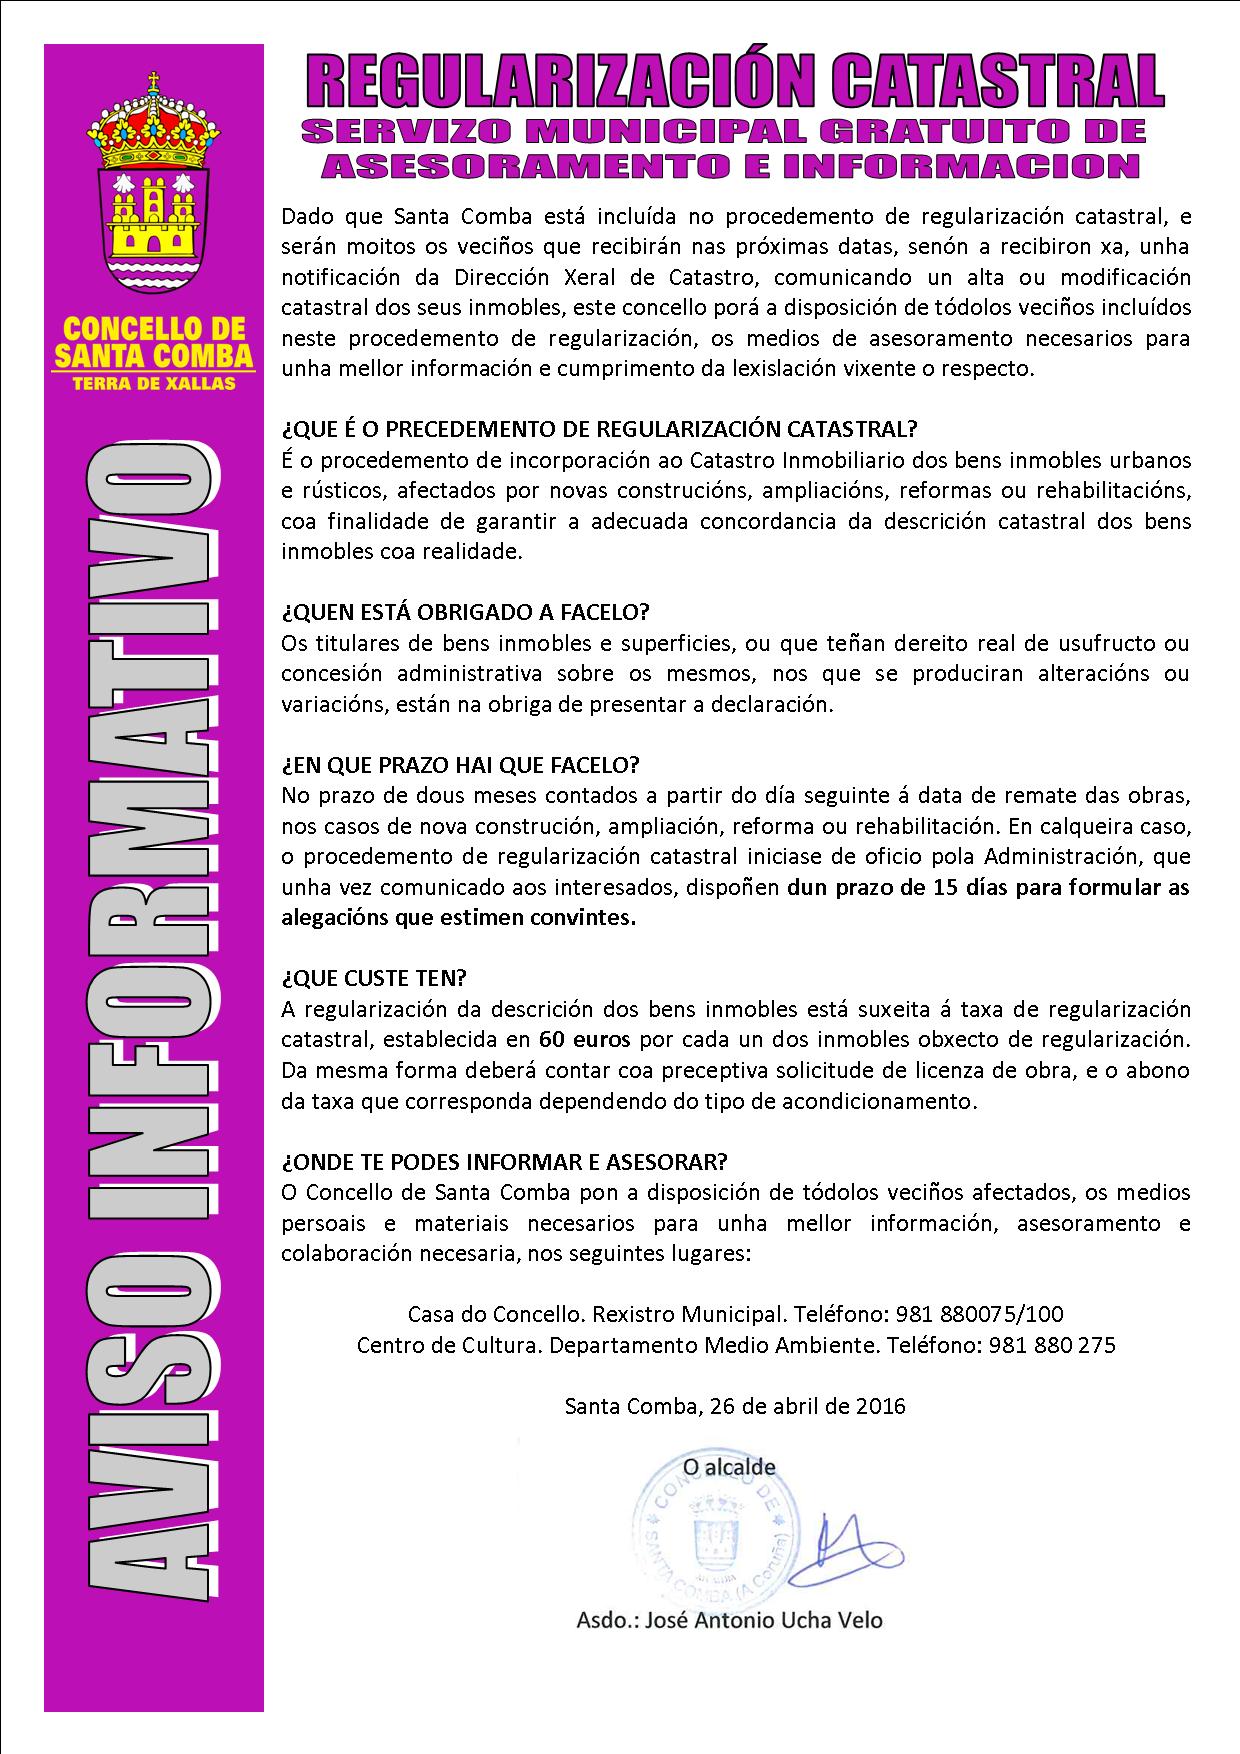 Regularización Catastral – Servizo Municipal Gratuito de Asesoramiento e Información.